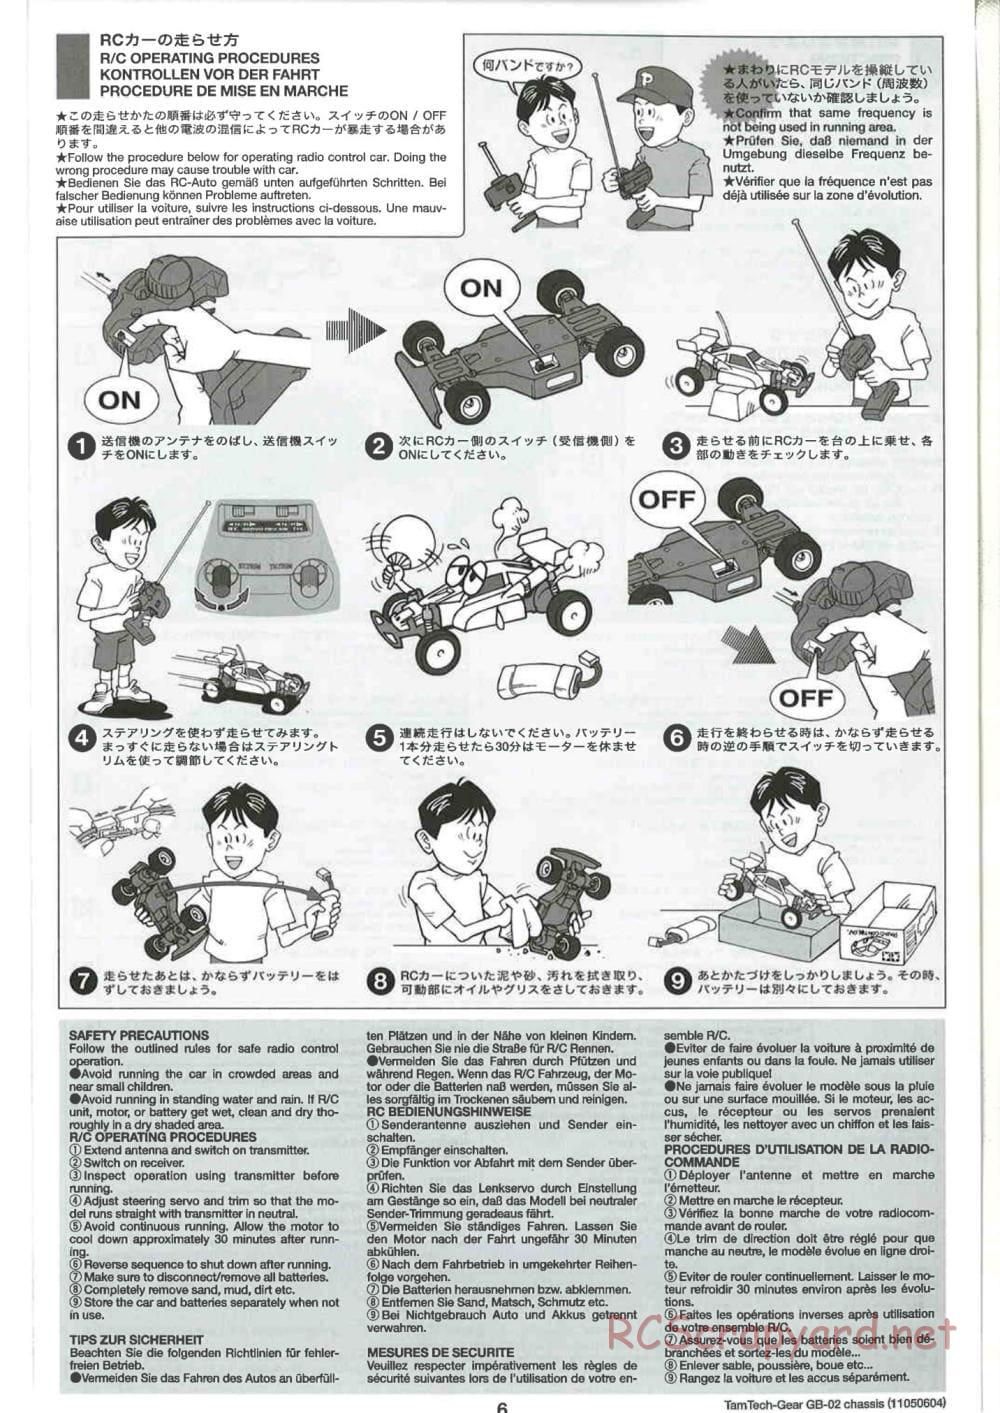 Tamiya - GB-02 Chassis - Manual - Page 6